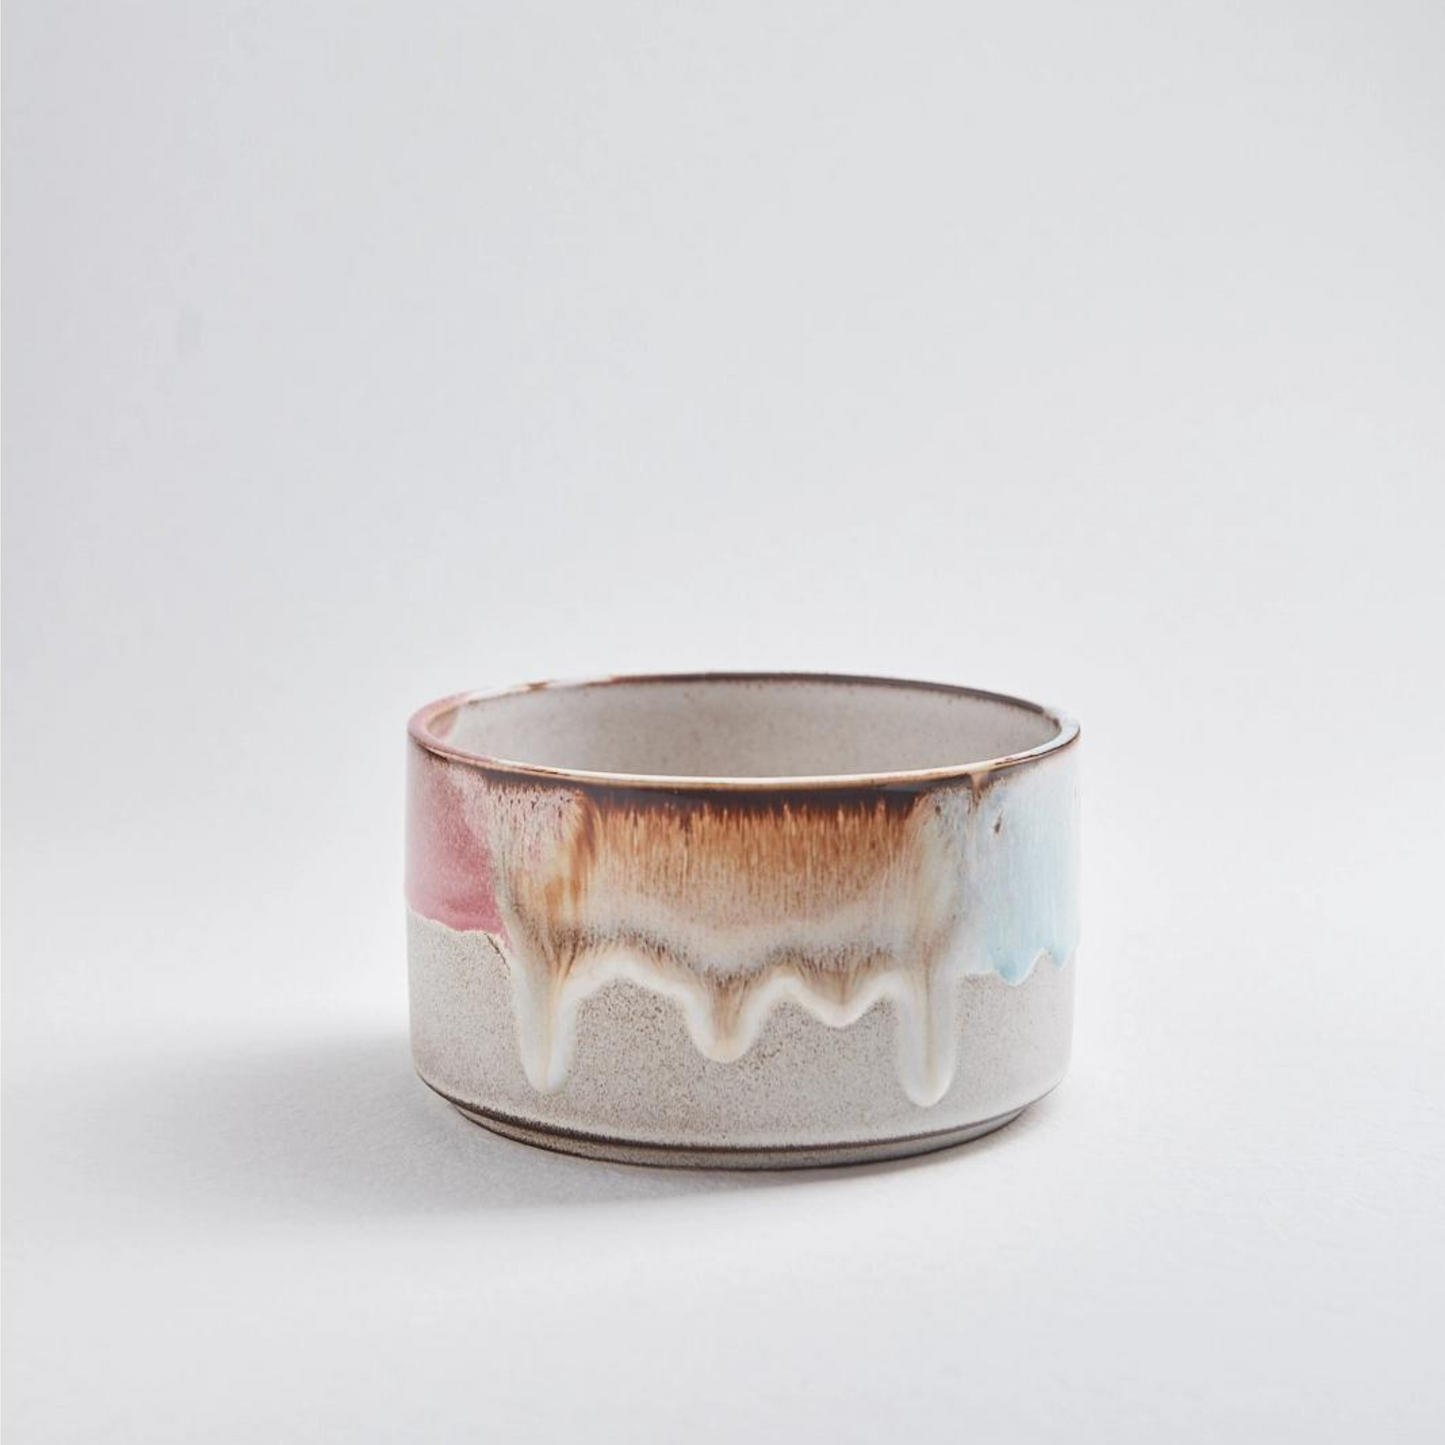 Handmade Melting Ceramic Bowl